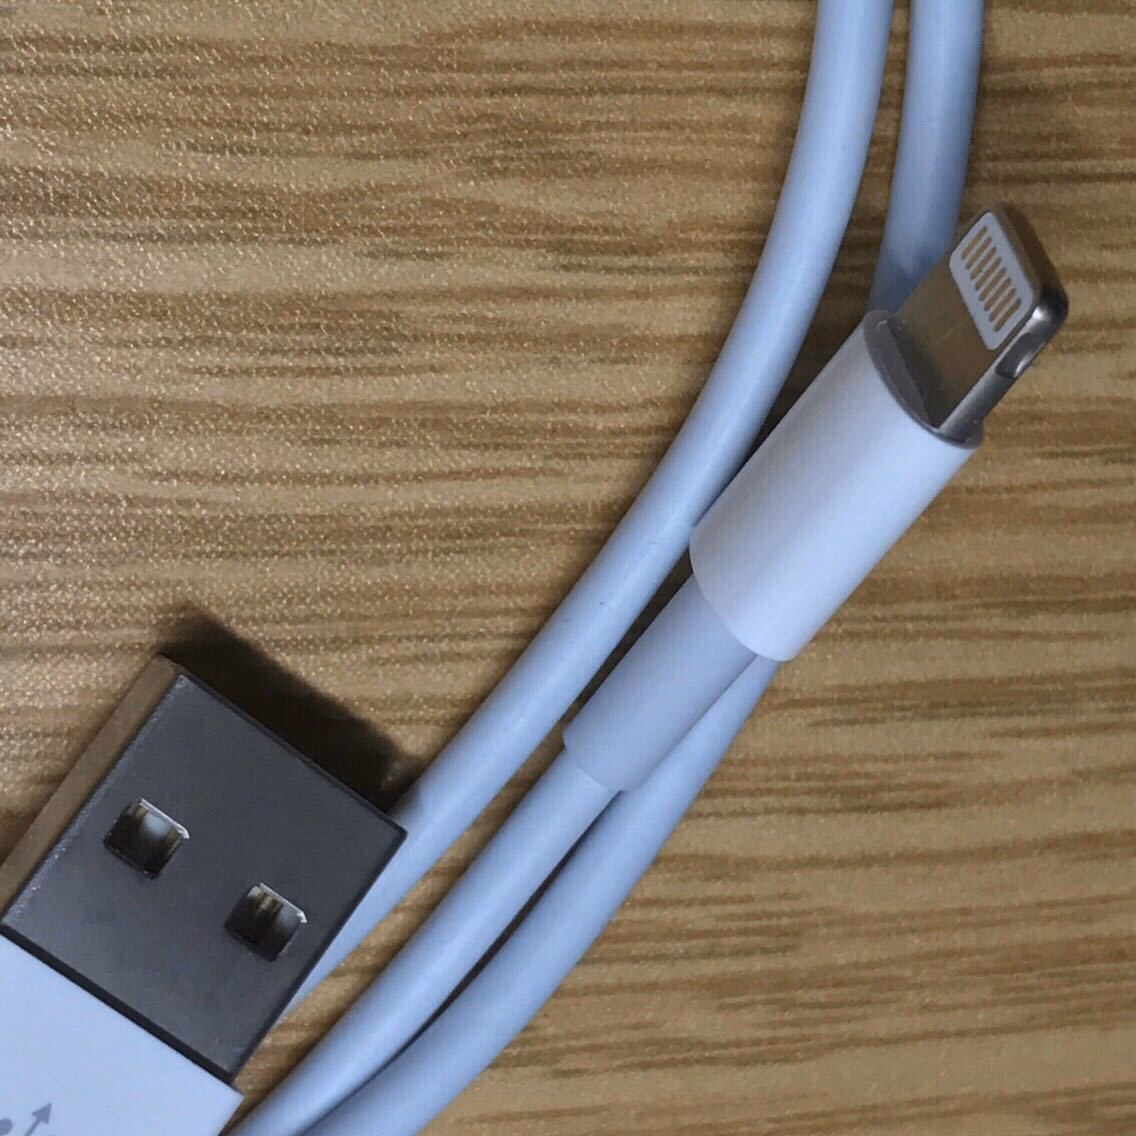 iPhone 充電器 充電ケーブル コード lightning cable ライトニングケーブル USB 急速充電 充電ケーブル iPad コンセント